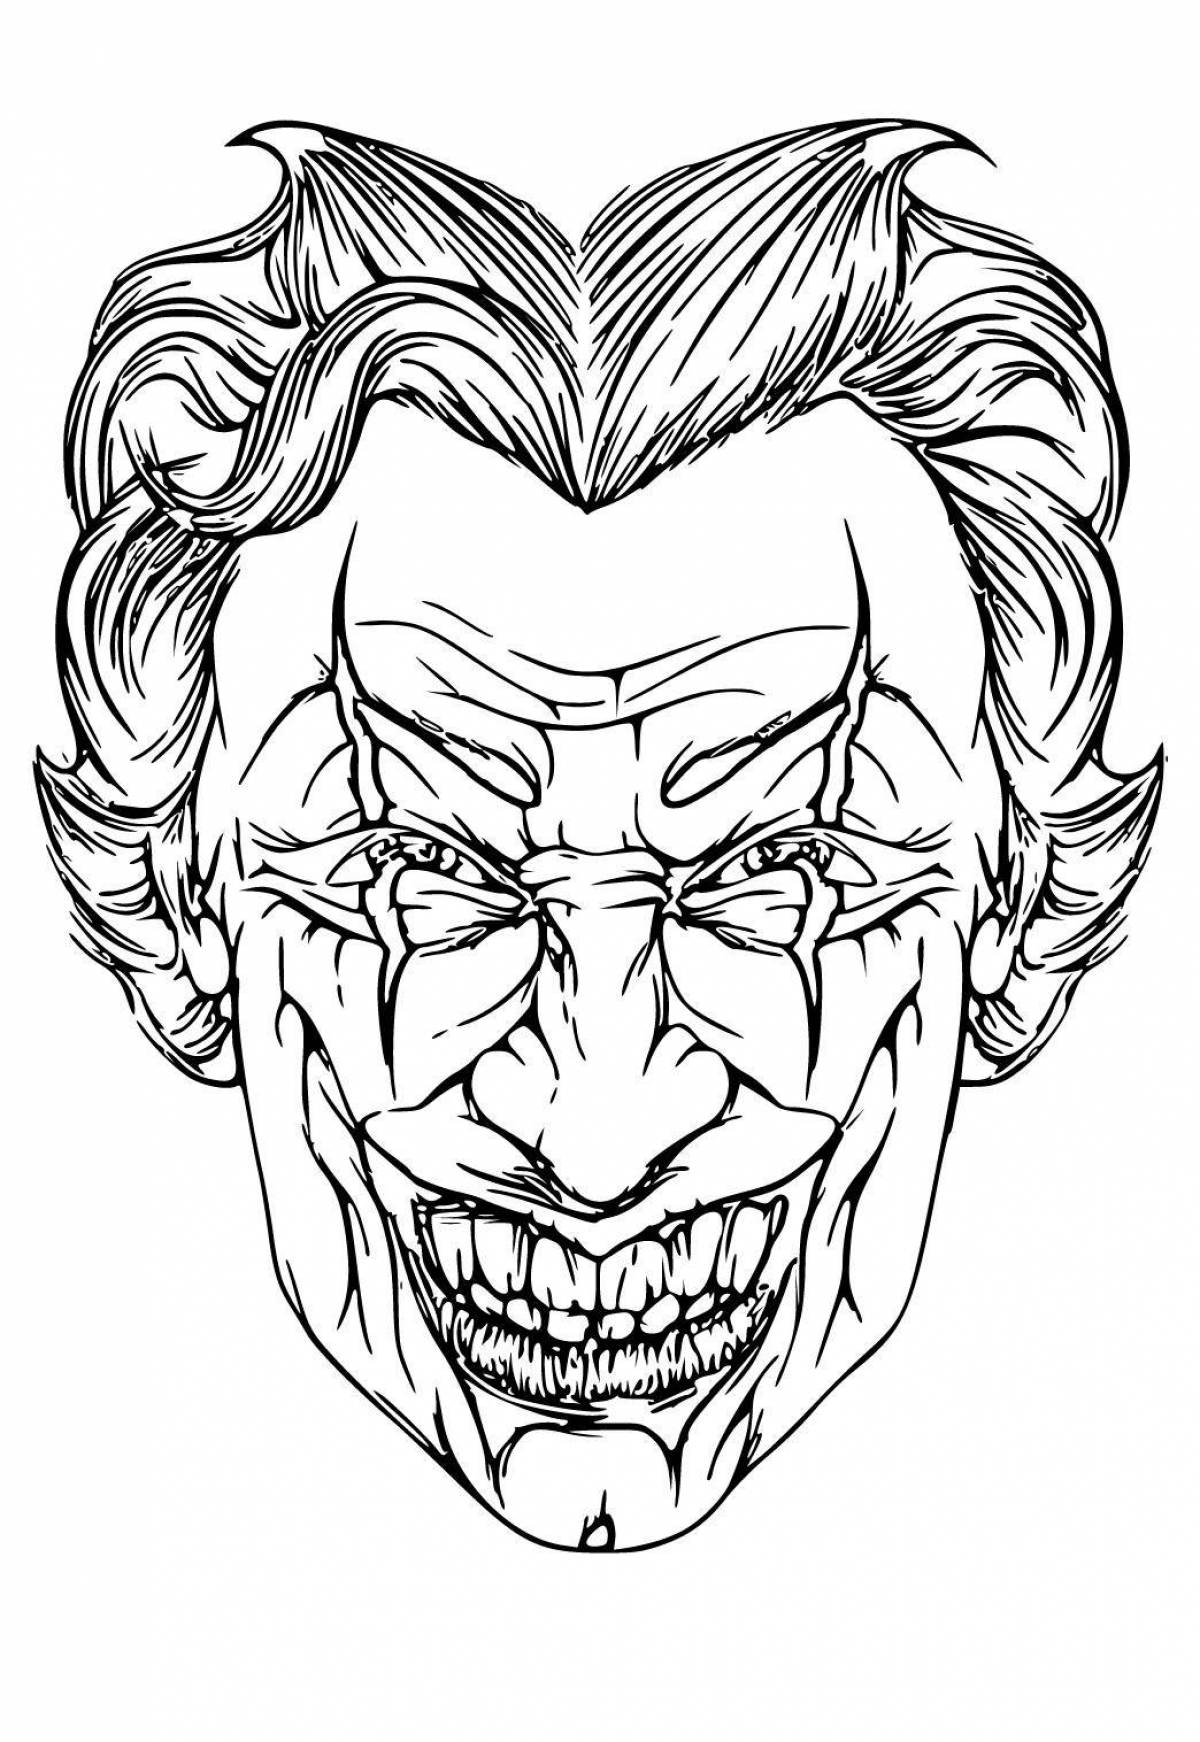 Sinister Joker face painting